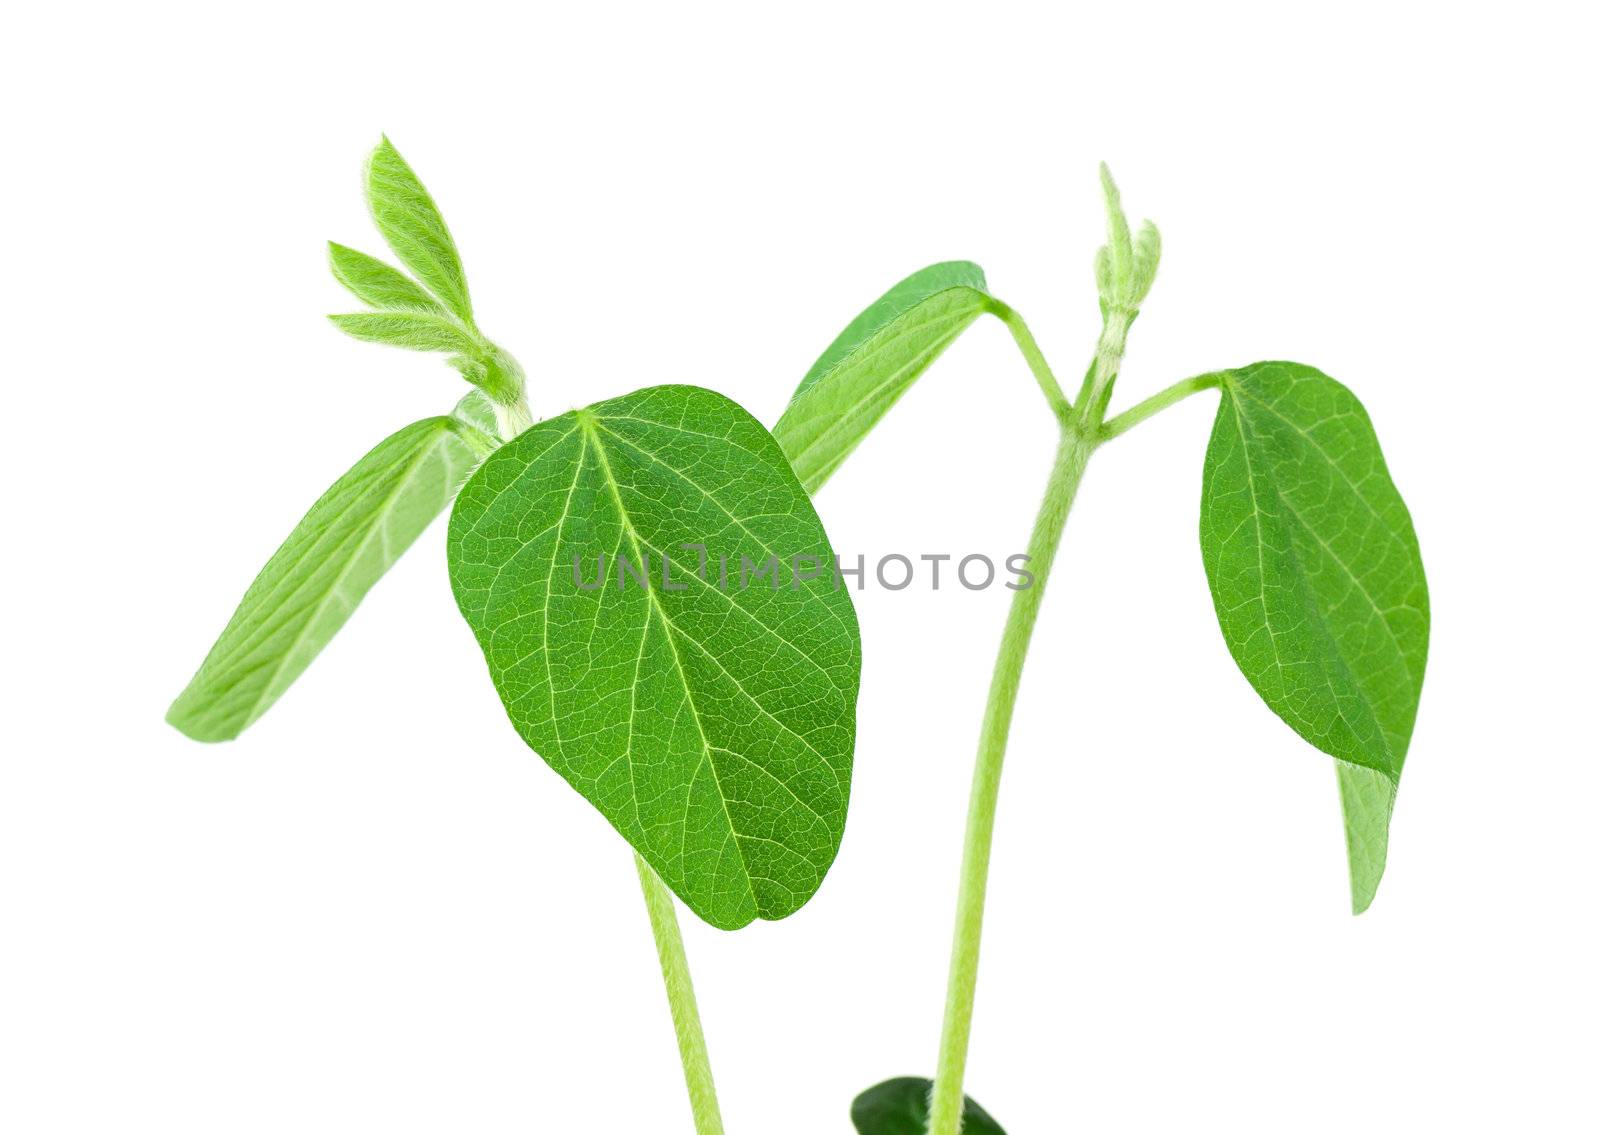 Soy plant by vtorous